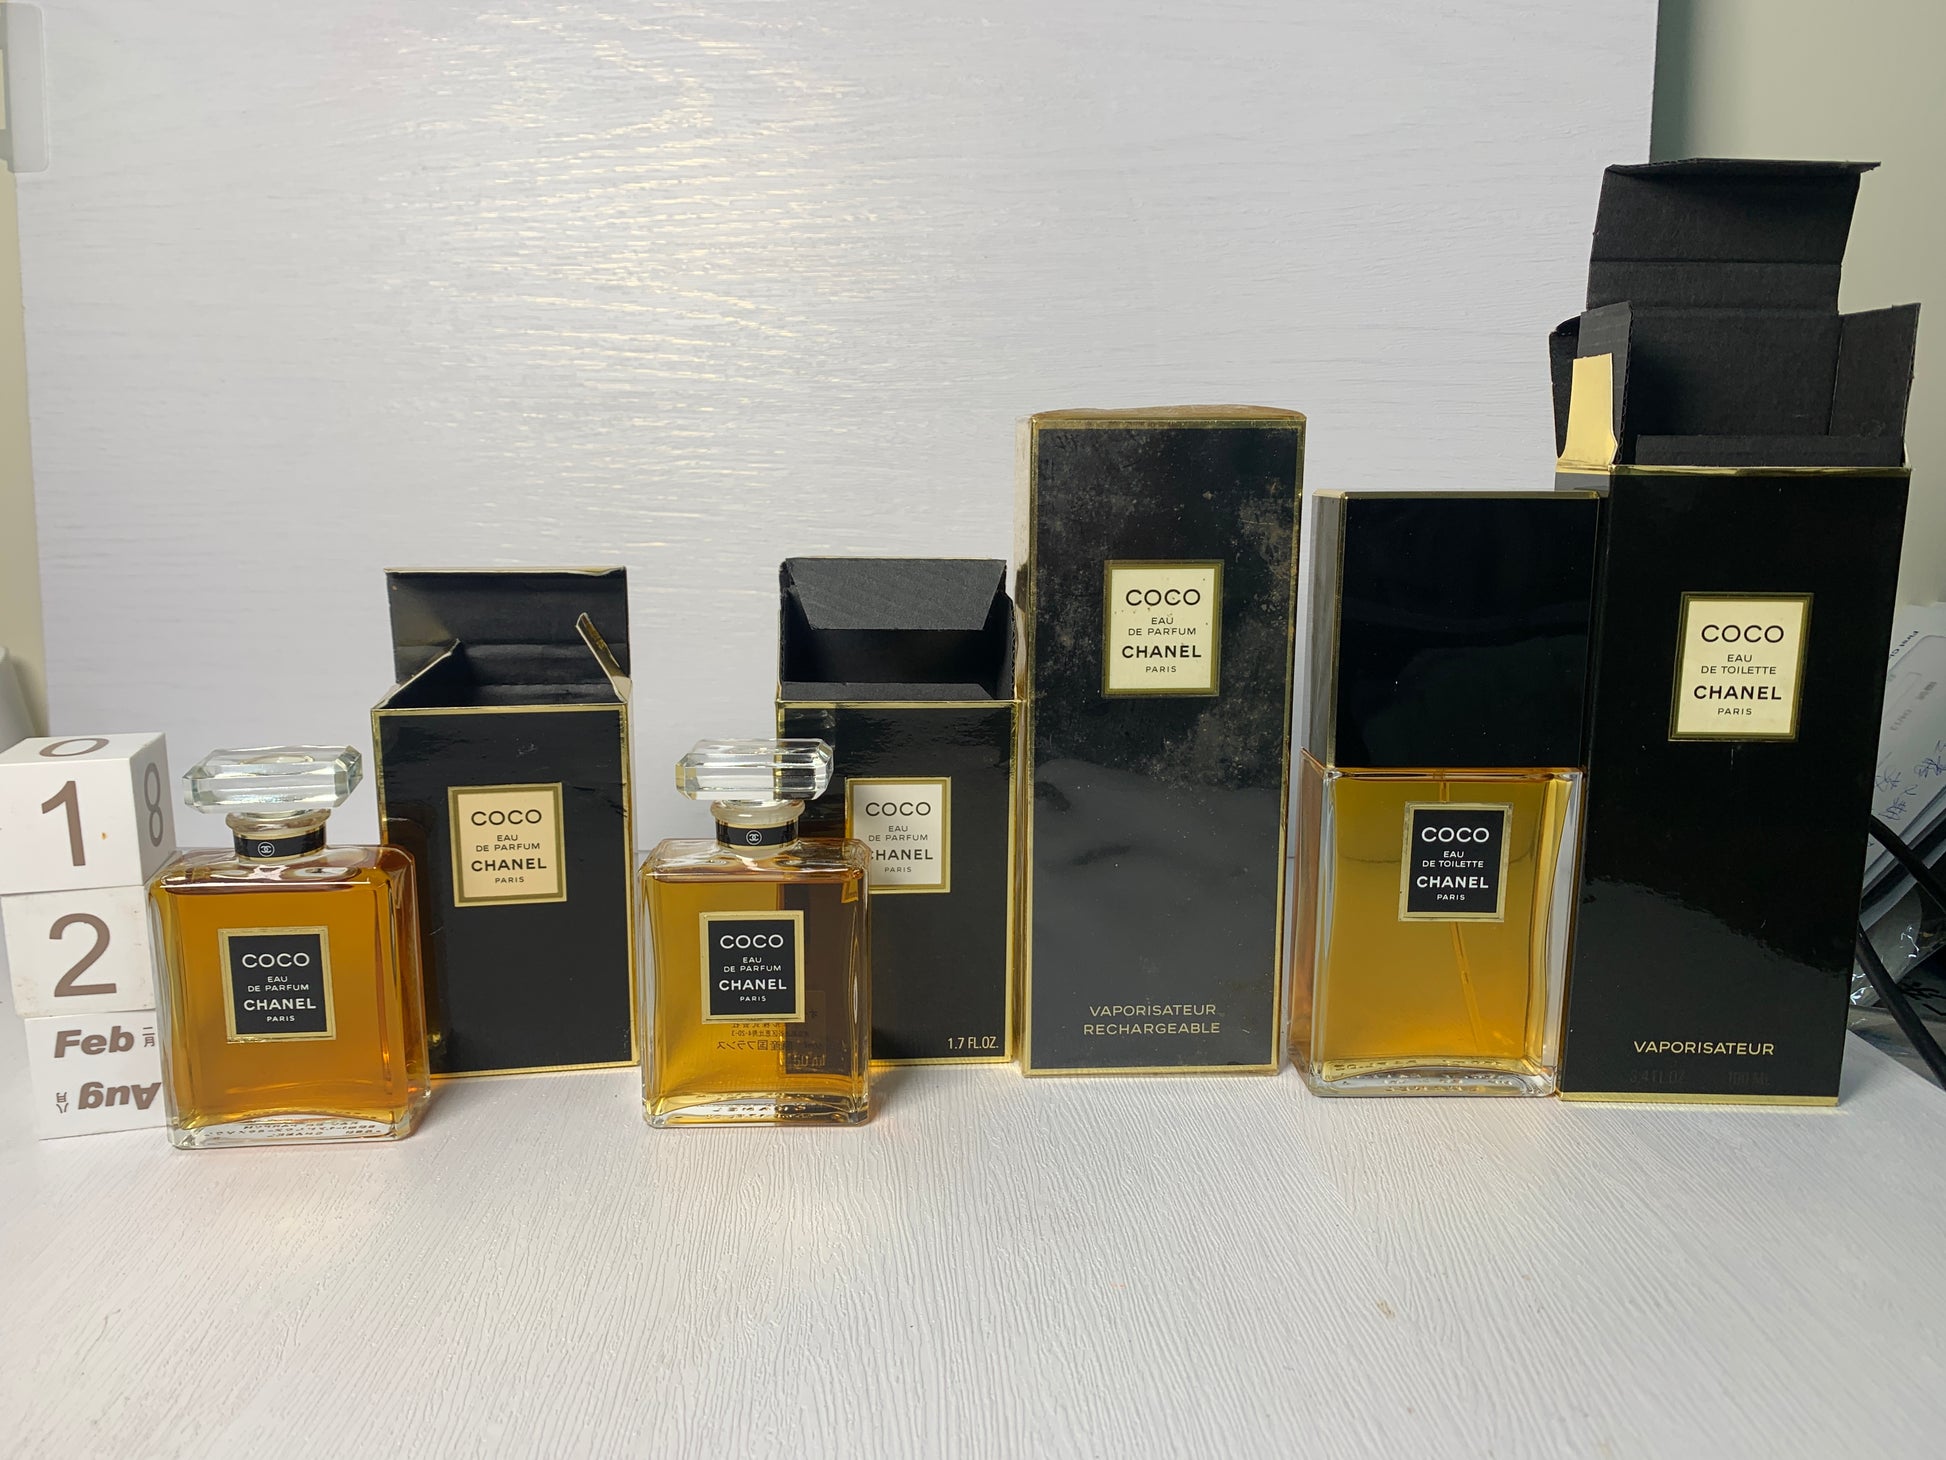 Chanel Coco Eau de Parfum 50 ml 1.7 fl oz Vintage